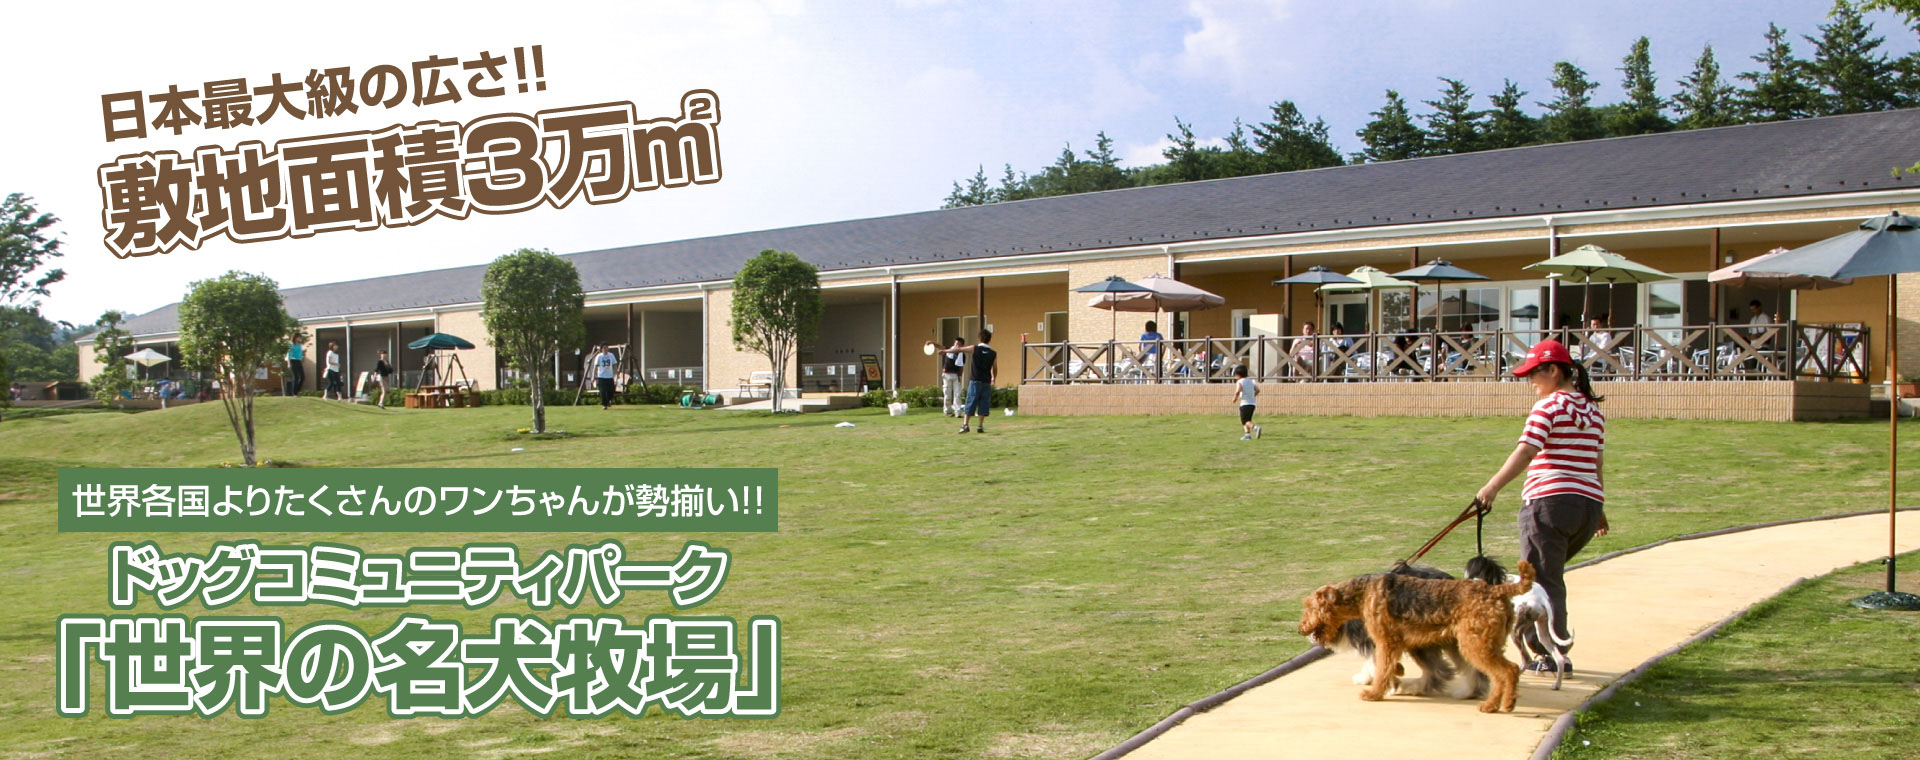 世界の名犬牧場 日本最大級 群馬のドッグラン ドッグカフェならここ